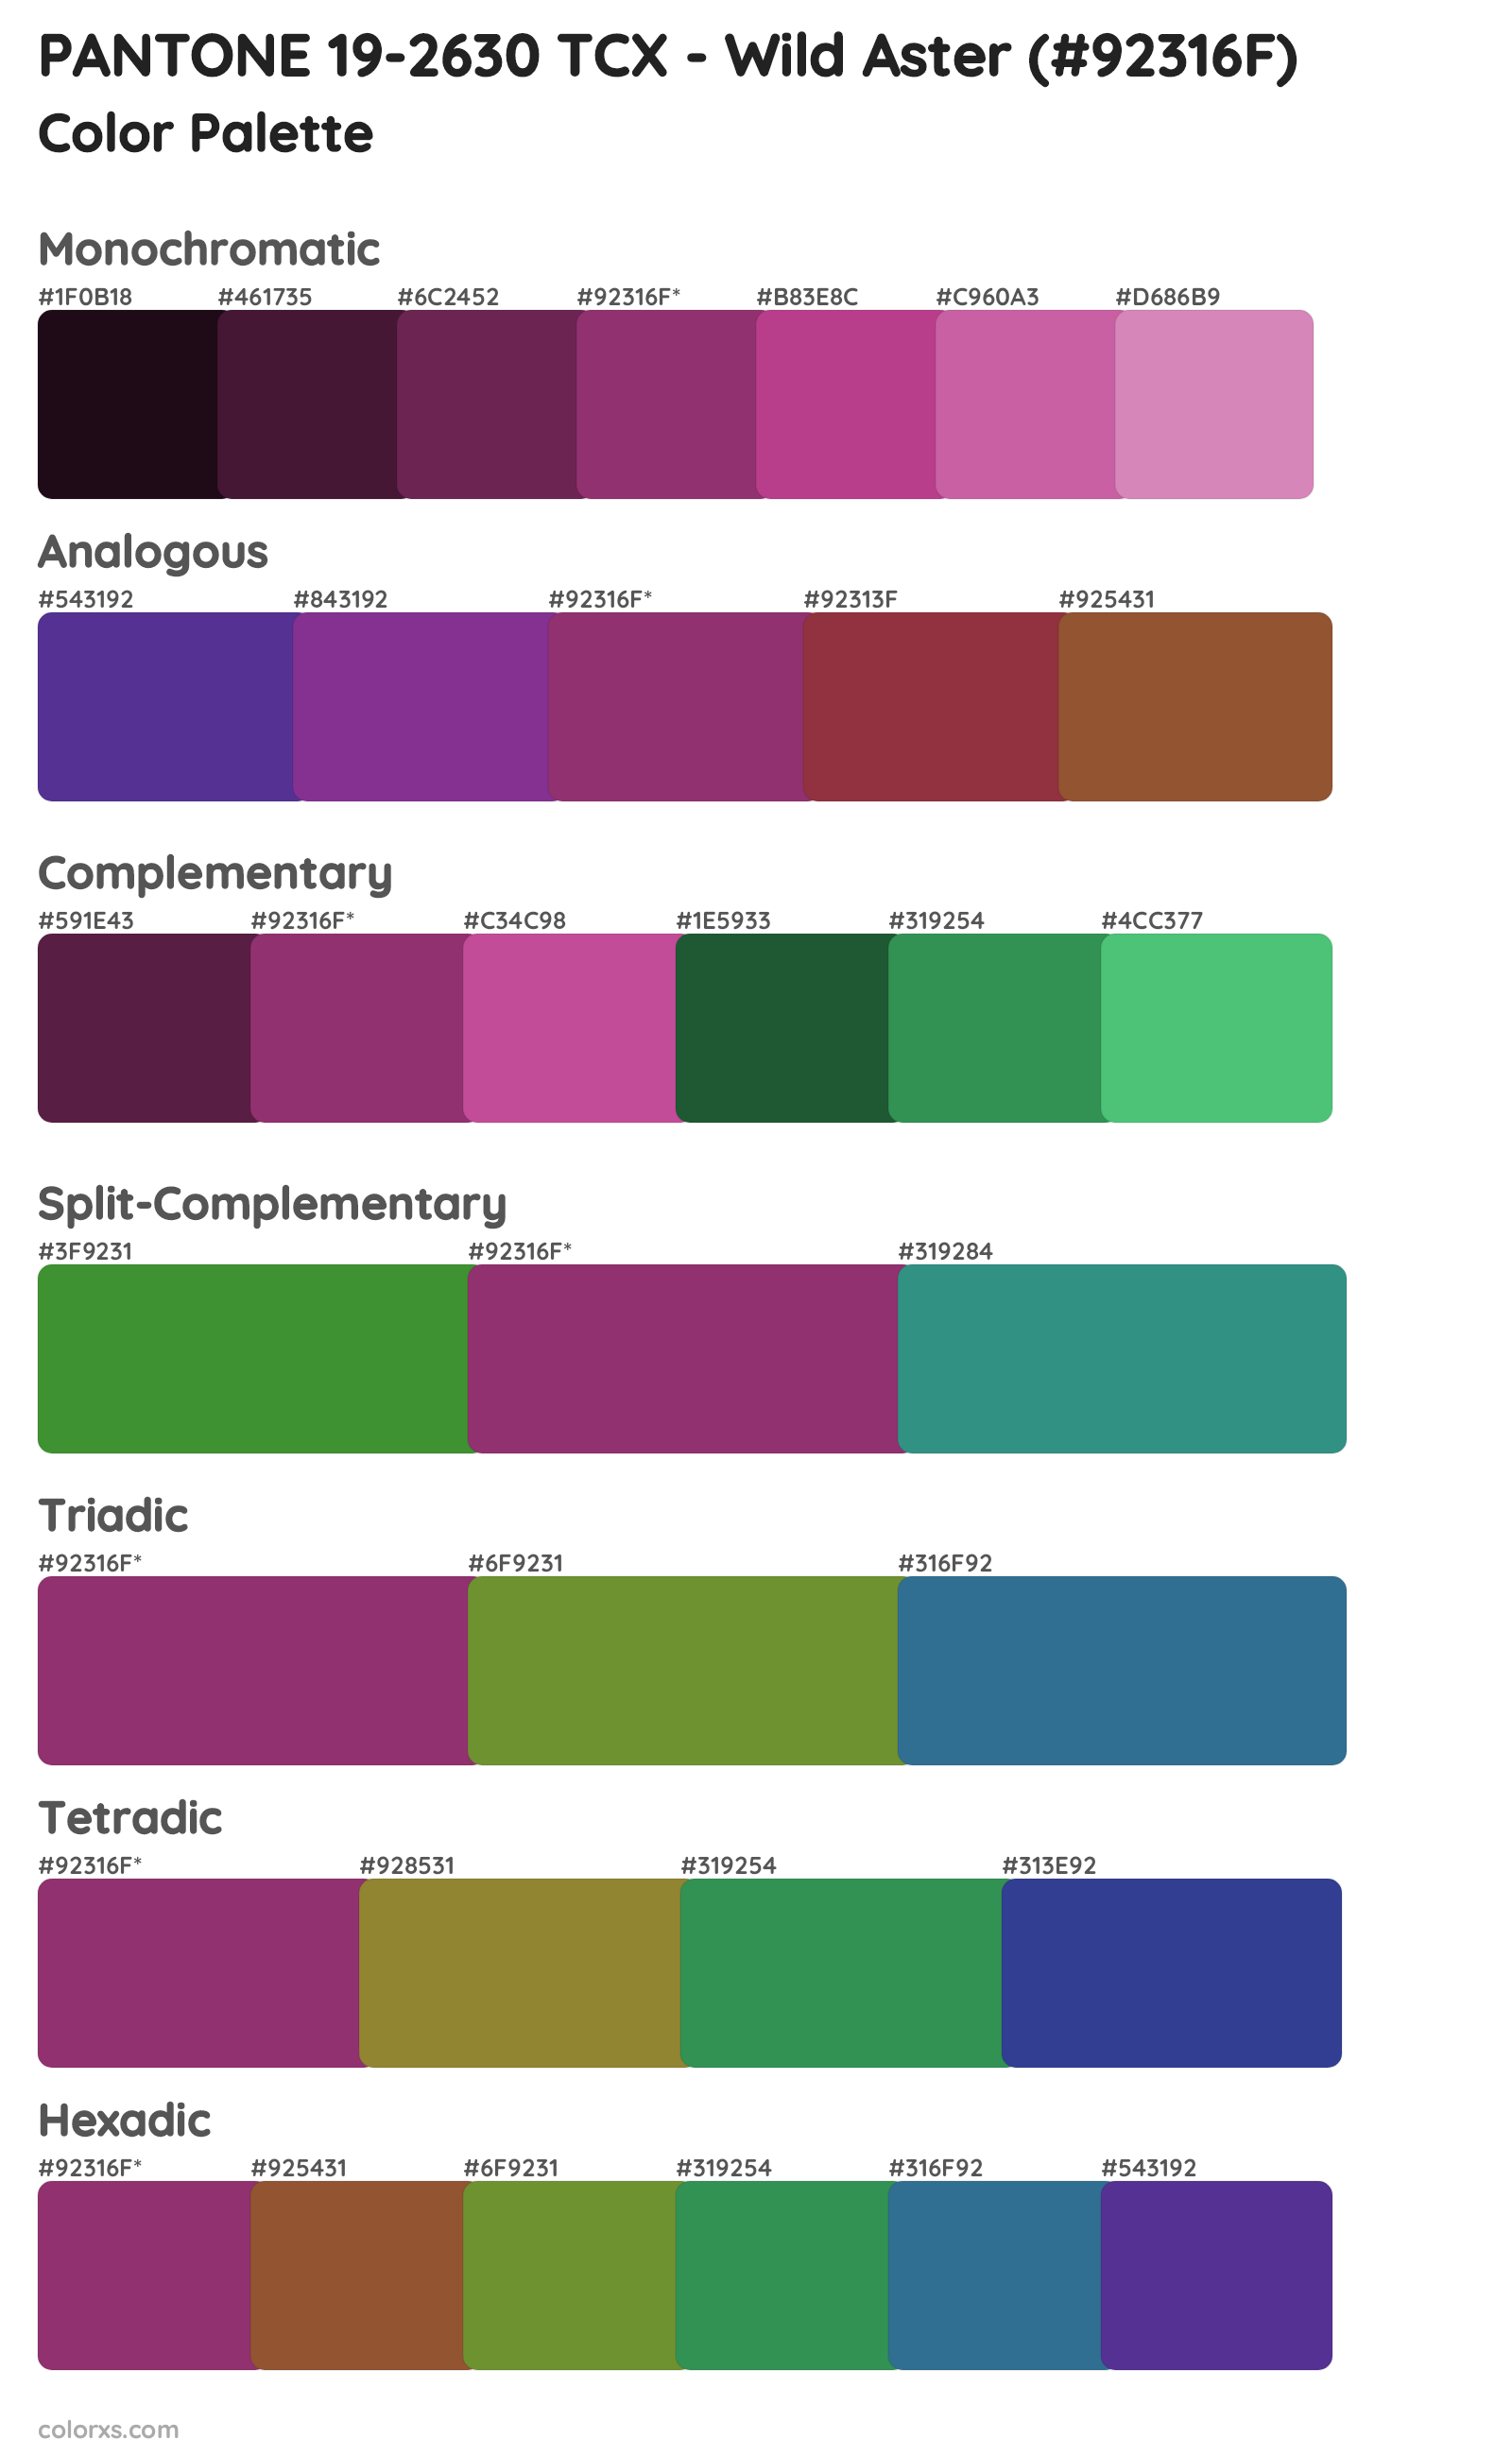 PANTONE 19-2630 TCX - Wild Aster Color Scheme Palettes